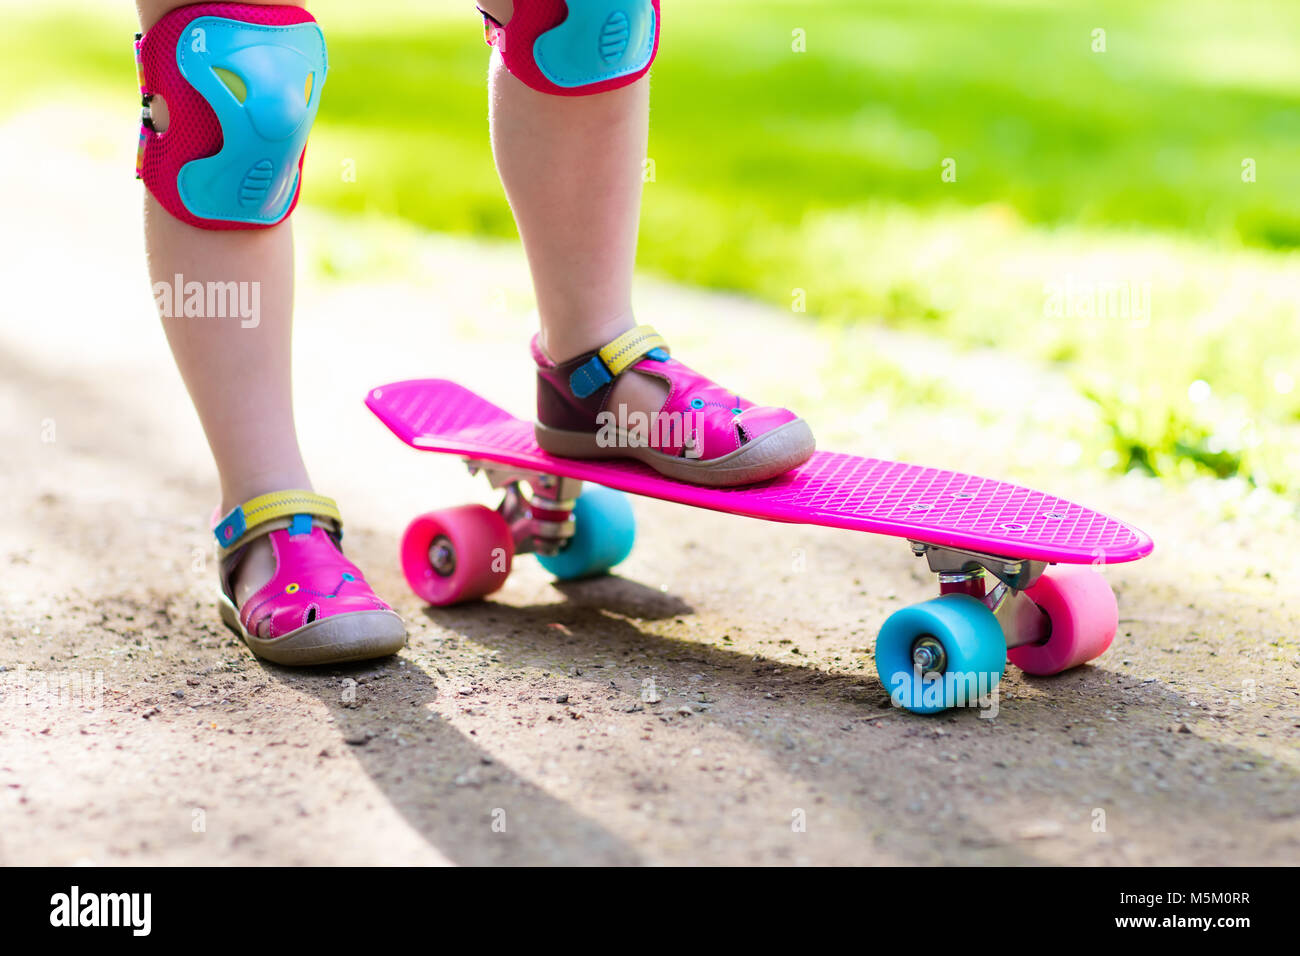 Kinder fahren Skateboard im Sommerpark. Kleines Mädchen Skateboard fahren  zu lernen. Aktiven outdoor-Sport für Schule und Kindergarten-Kinder.  Kinder-skat Stockfotografie - Alamy